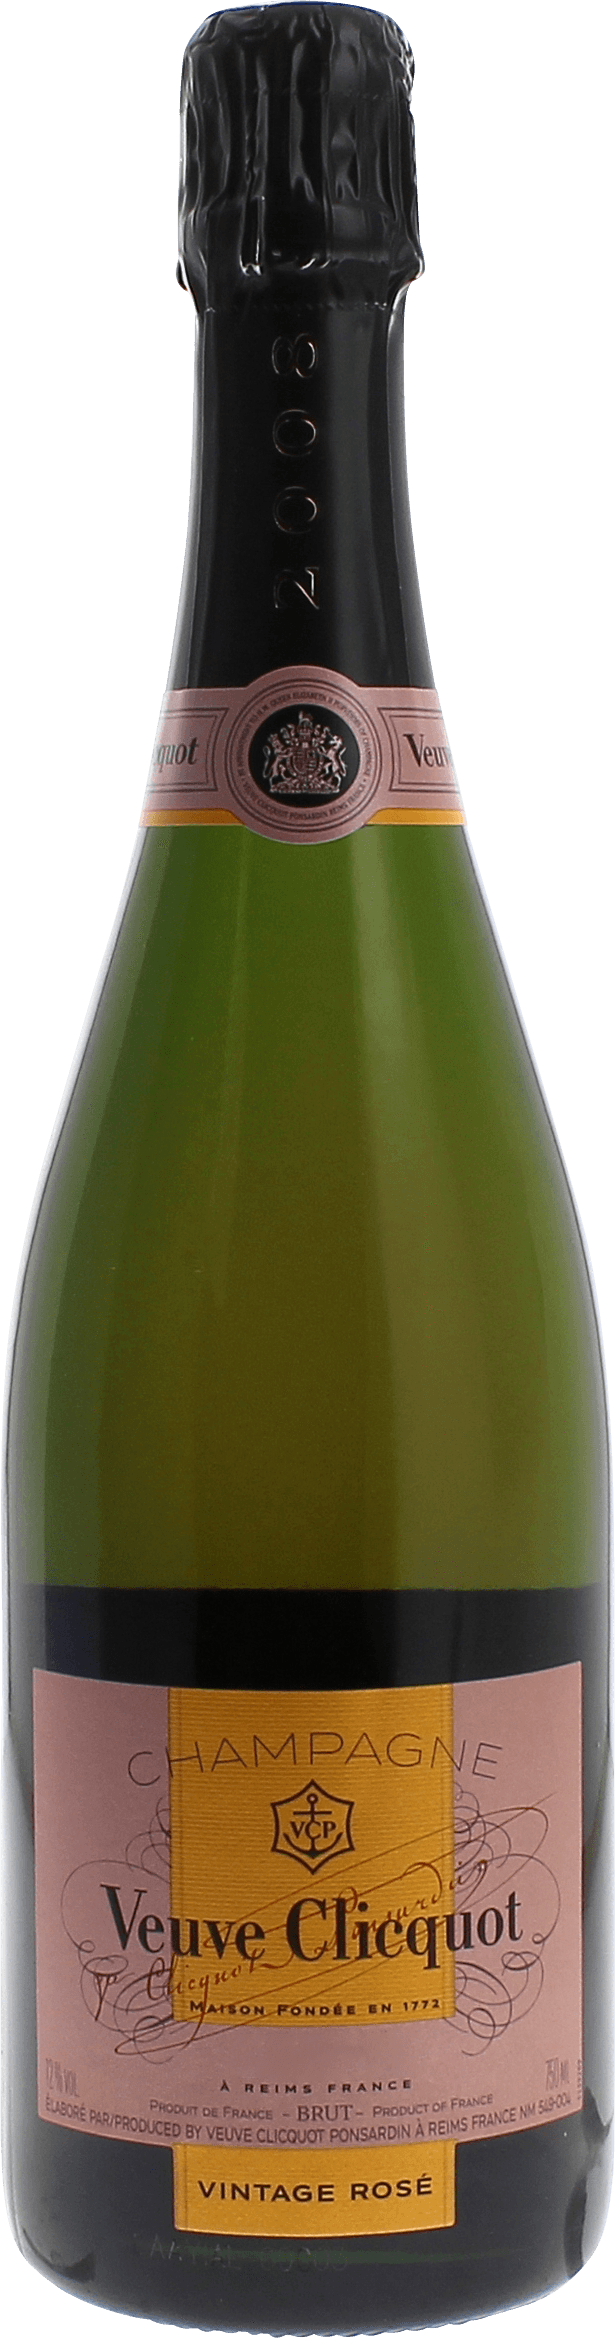 Veuve clicquot millsime ros avec coffret 2008  Veuve Clicquot, Champagne